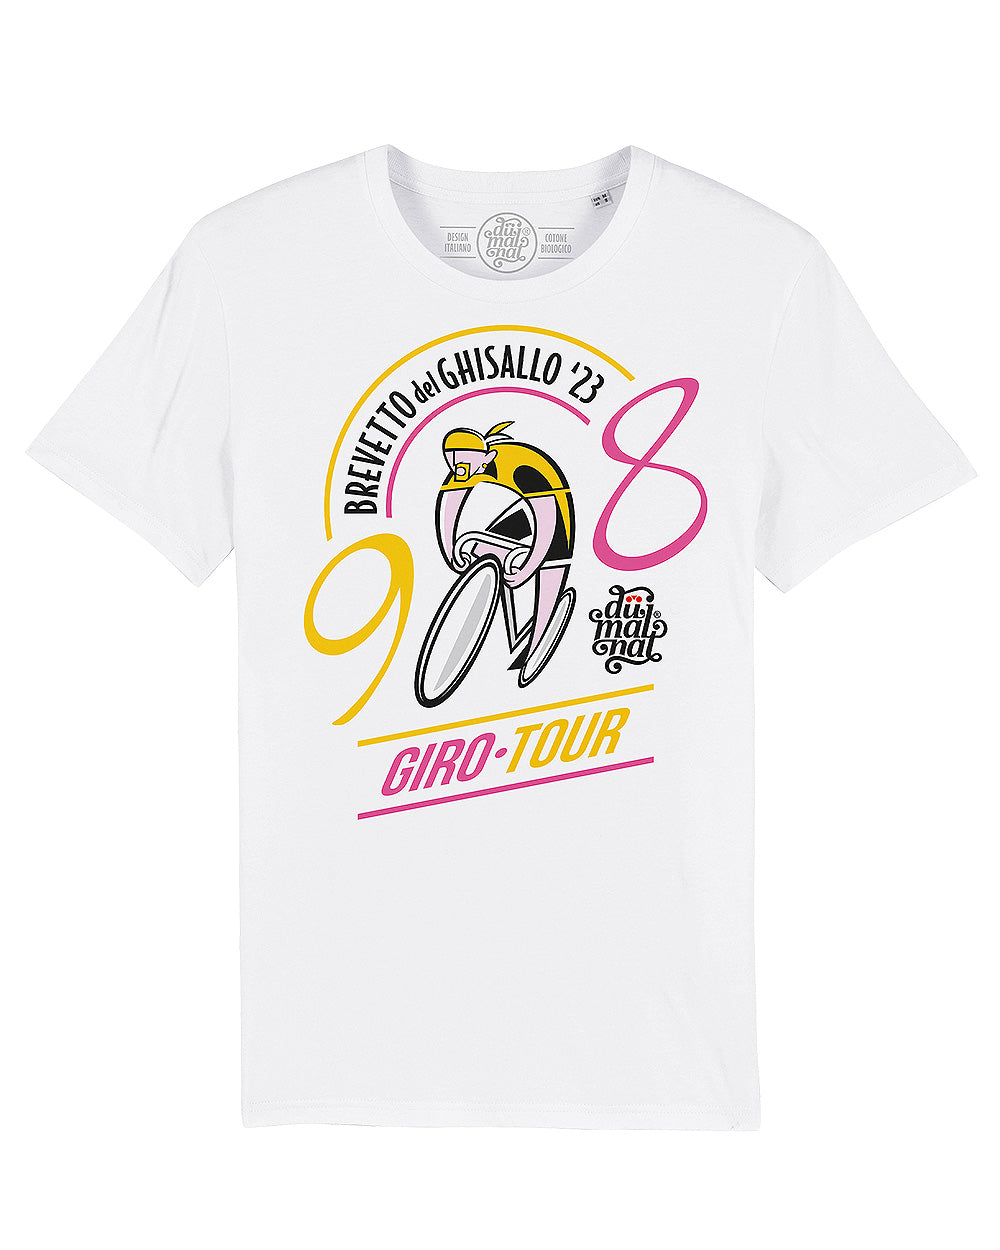 T-shirt "Brevetto del Ghisallo" mod. 98